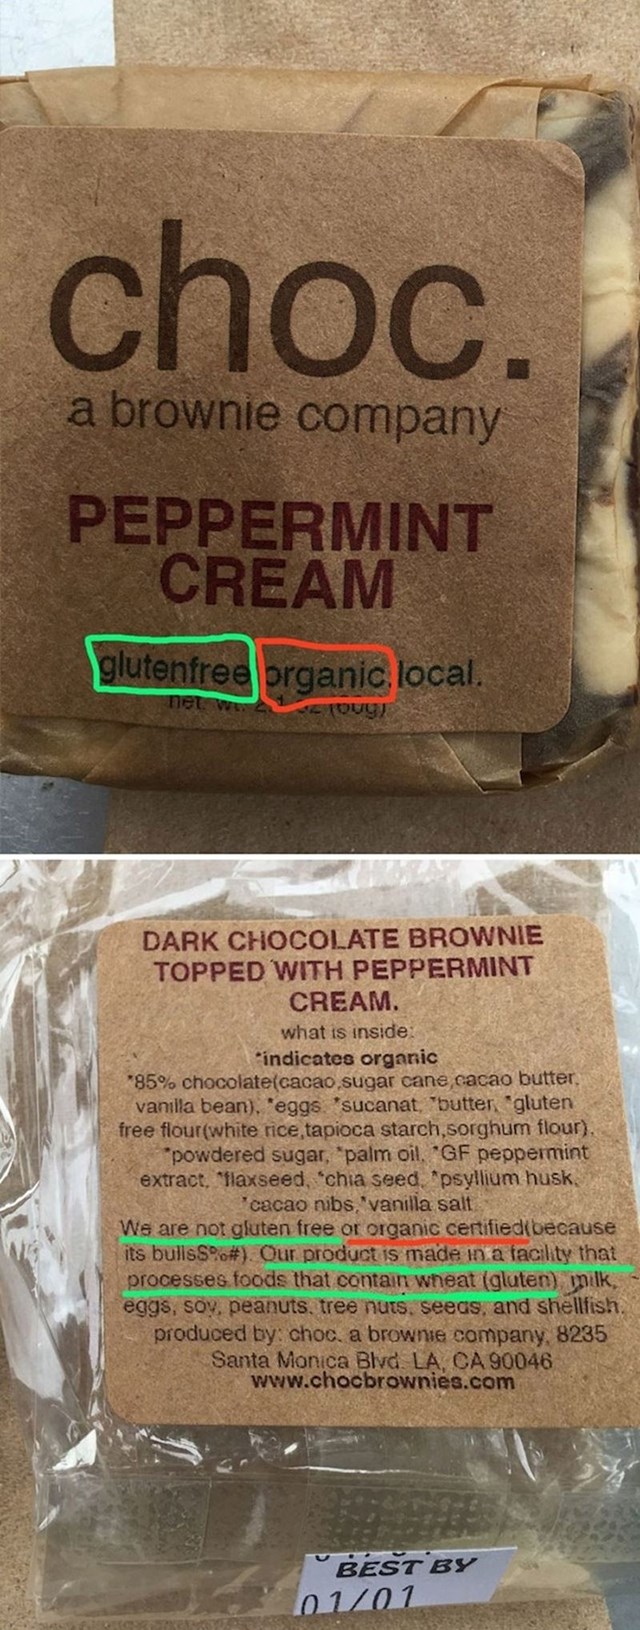 Organski i bez glutena? Ne, ovaj brownie nije niti jedno od toga. Tako piše i na deklaraciji na drugoj strani pakovanja.